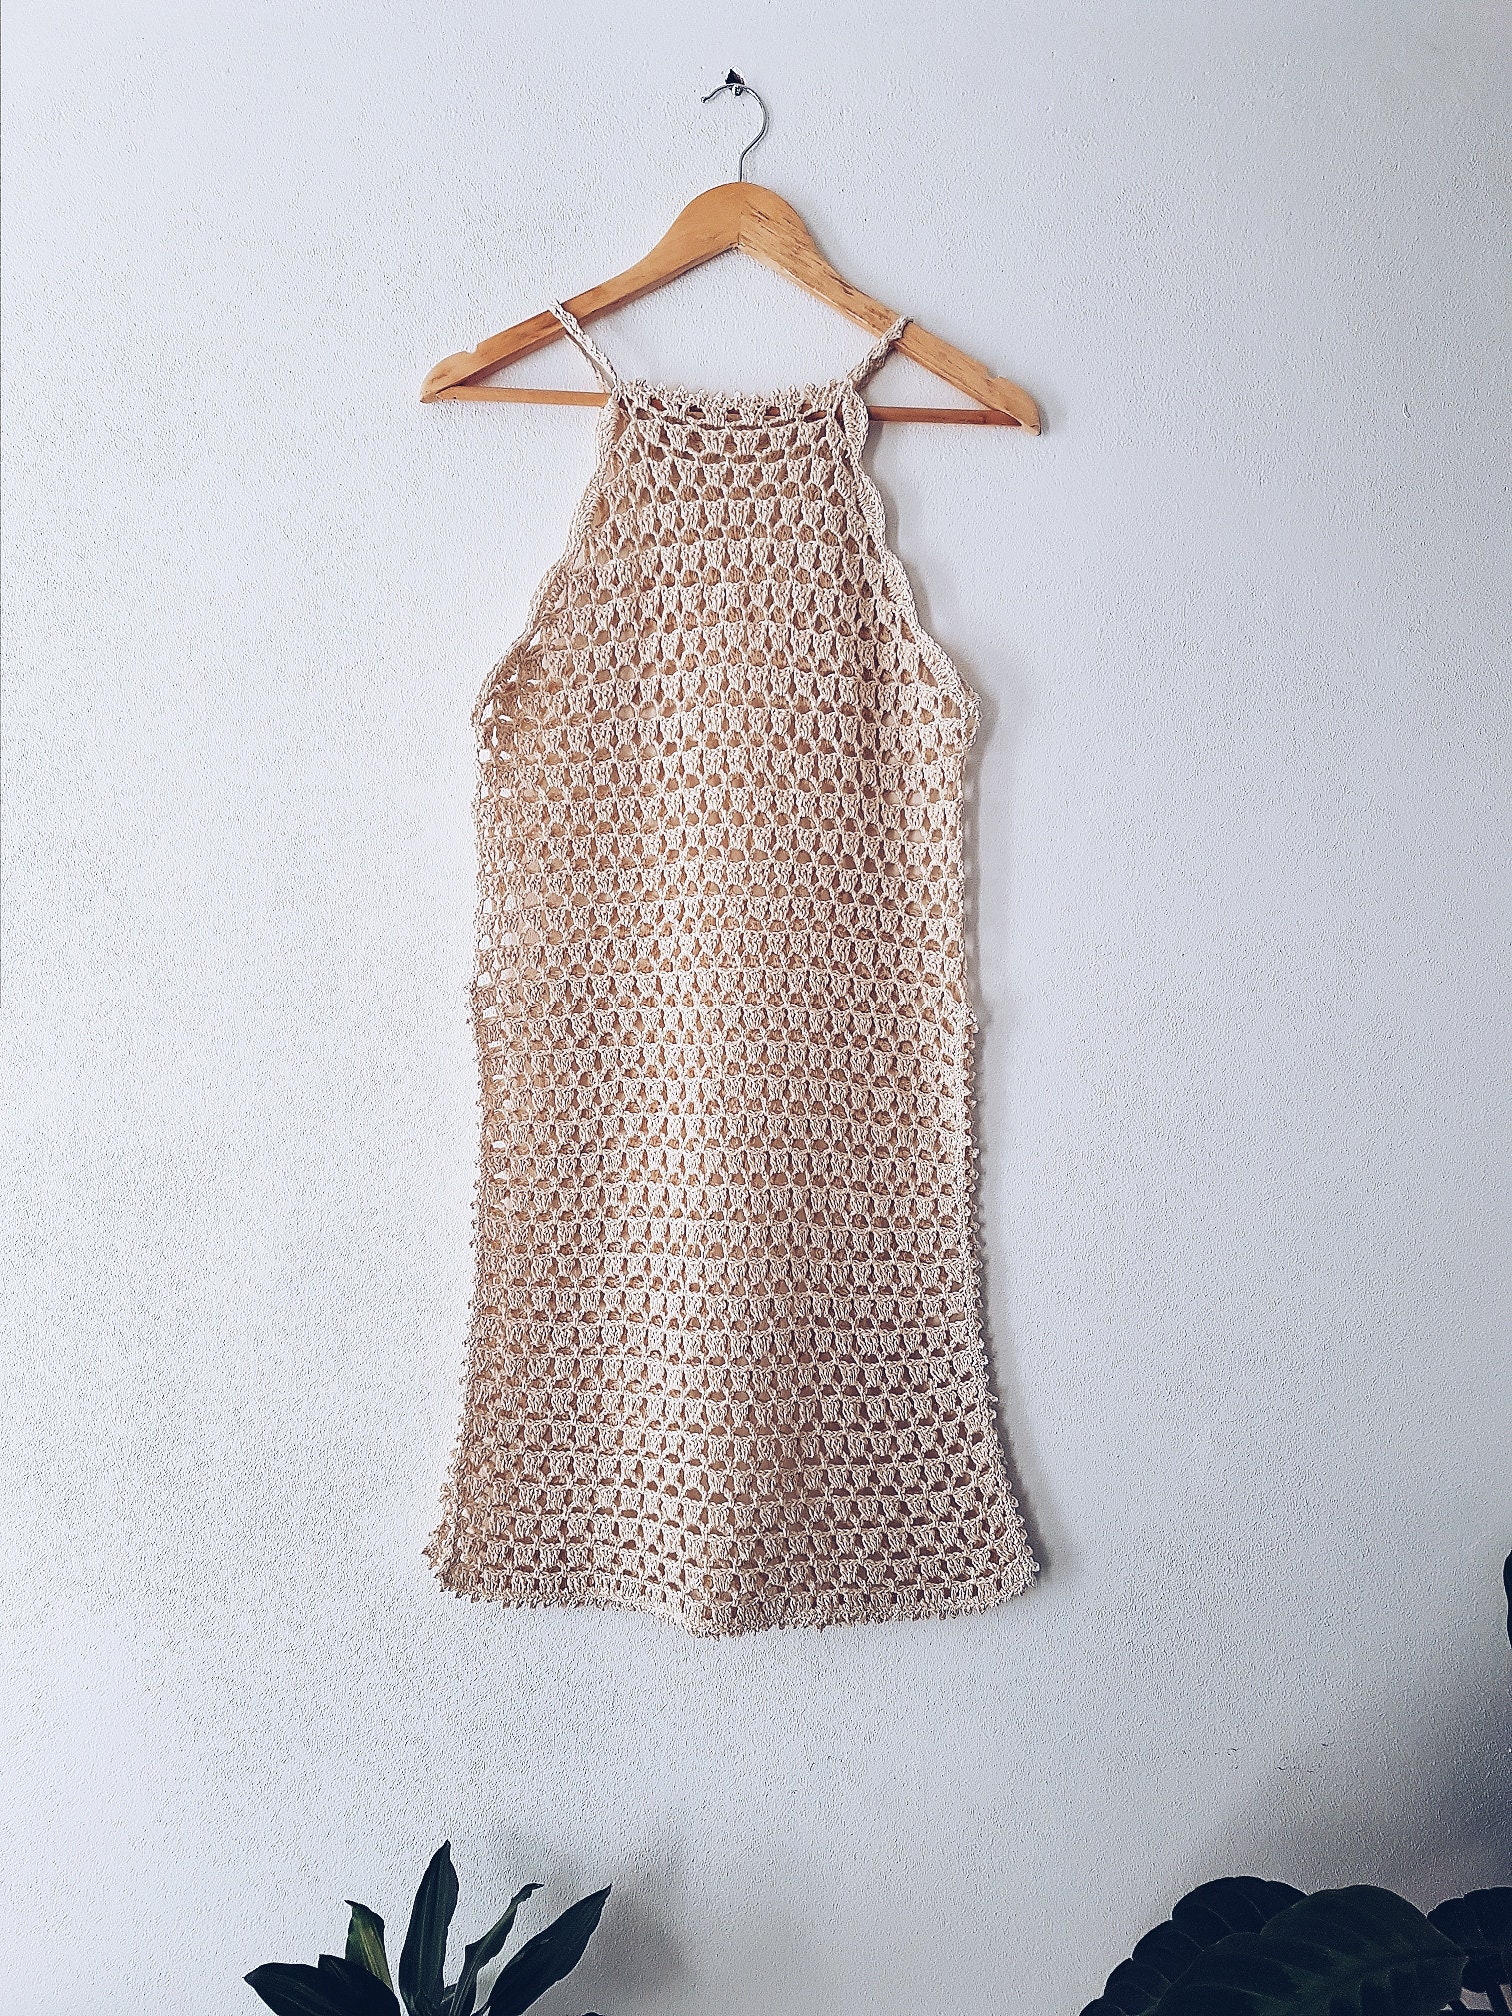 Crochet Top Pattern / Crochet Mesh Top Pattern / Crochet Dress - Etsy